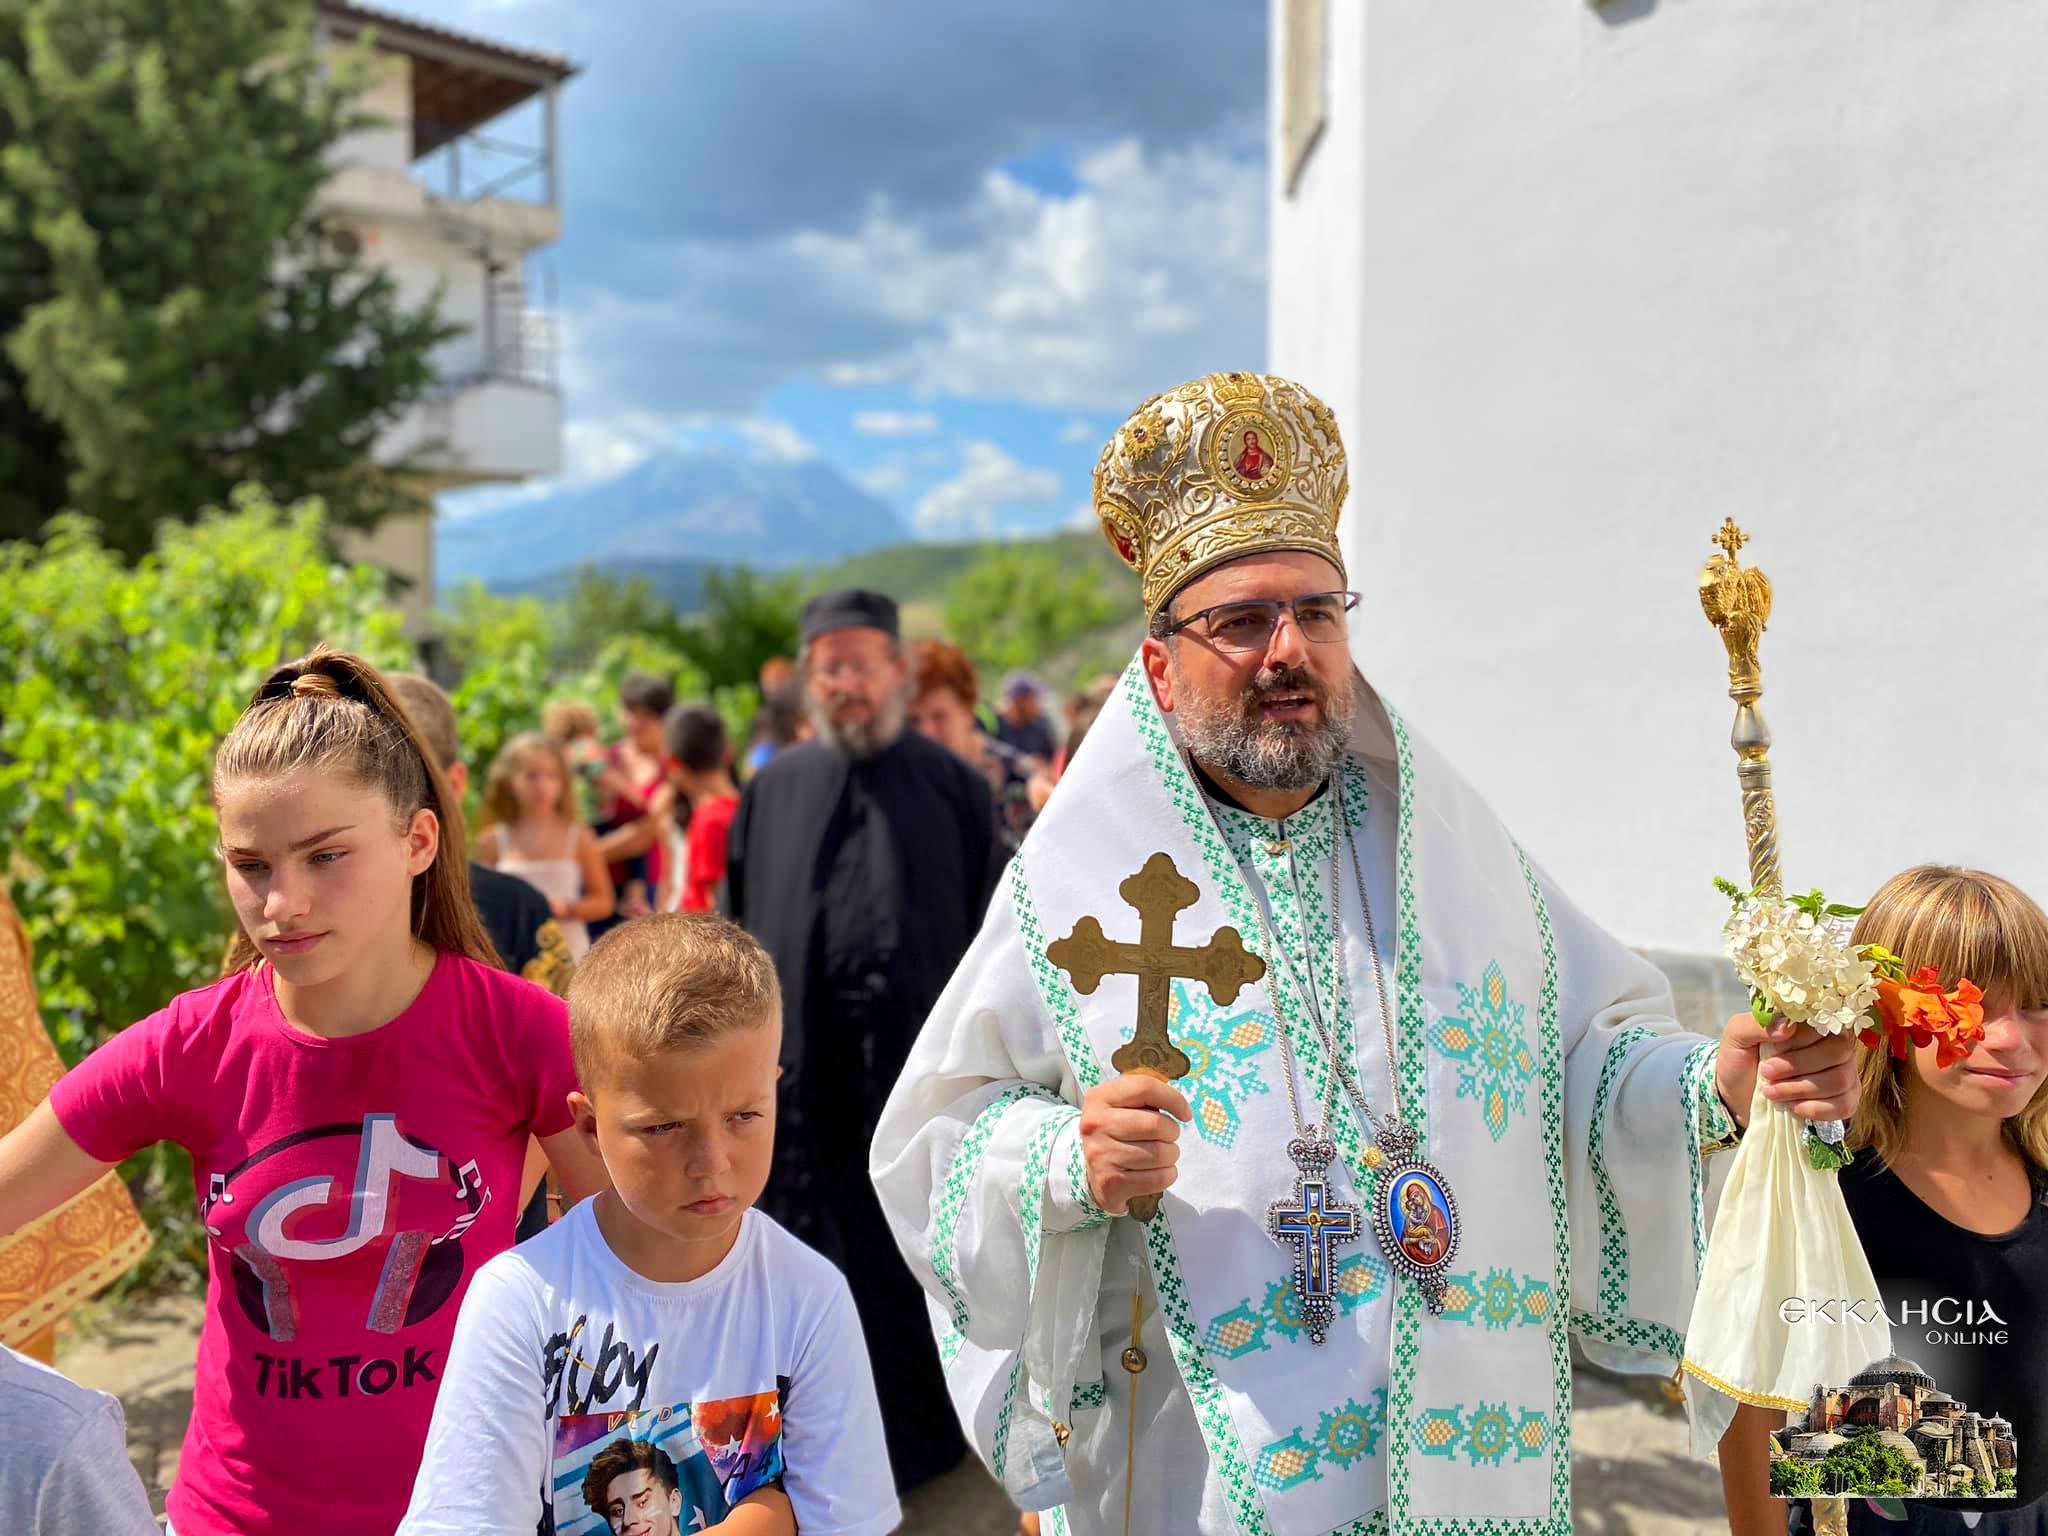 Λαμπρός εορτασμός της Μεταμόρφωσης του Σωτήρος στην Εκκλησία της Αλβανίας Μητρόπολη Ελμπασάν 2021